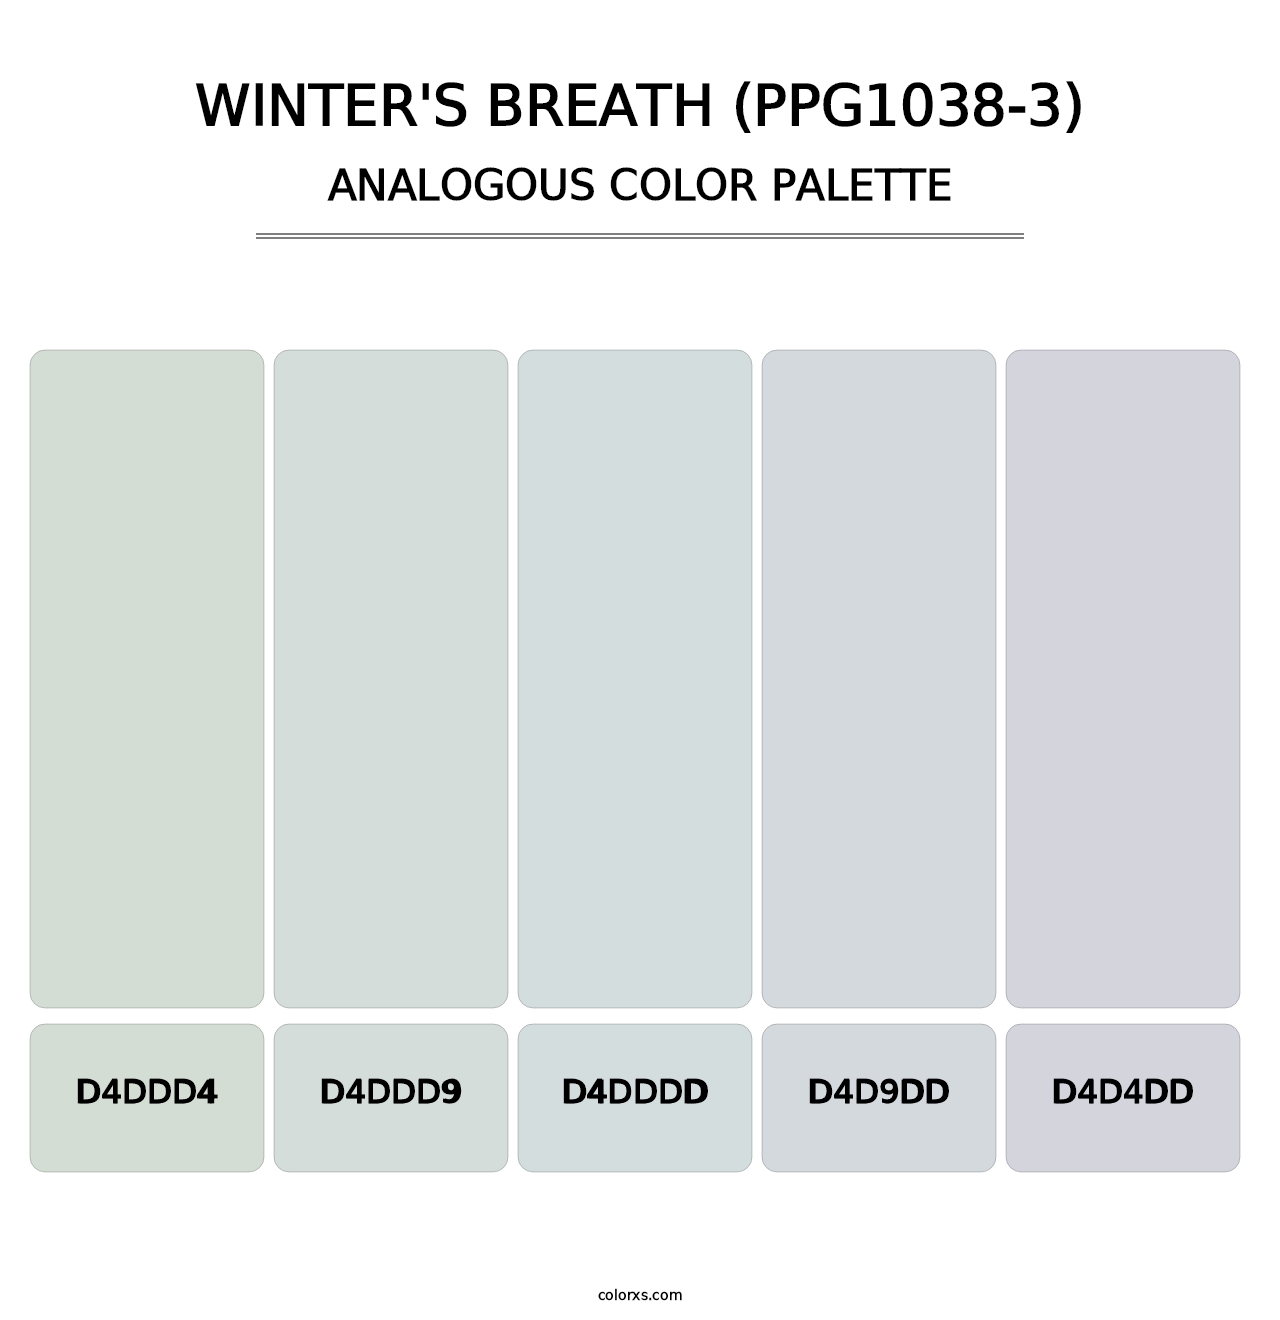 Winter's Breath (PPG1038-3) - Analogous Color Palette